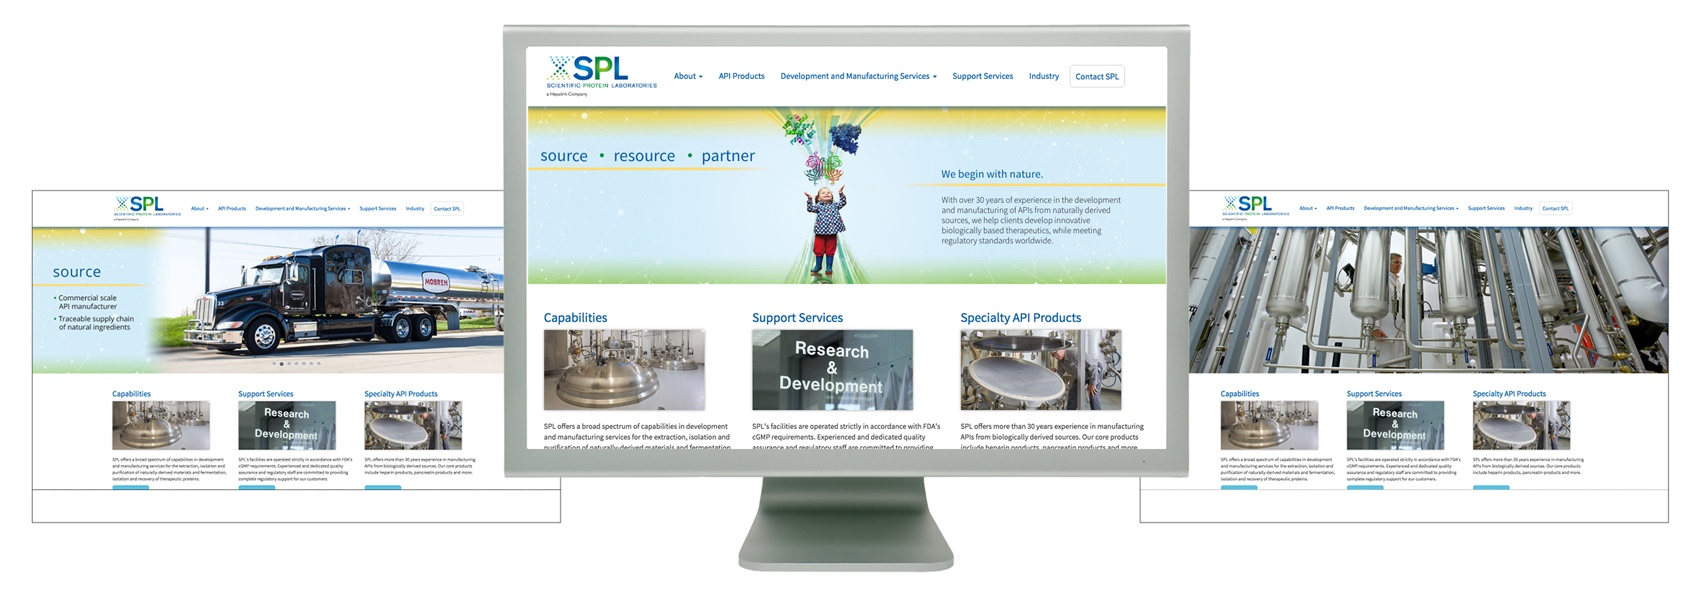 SPL website